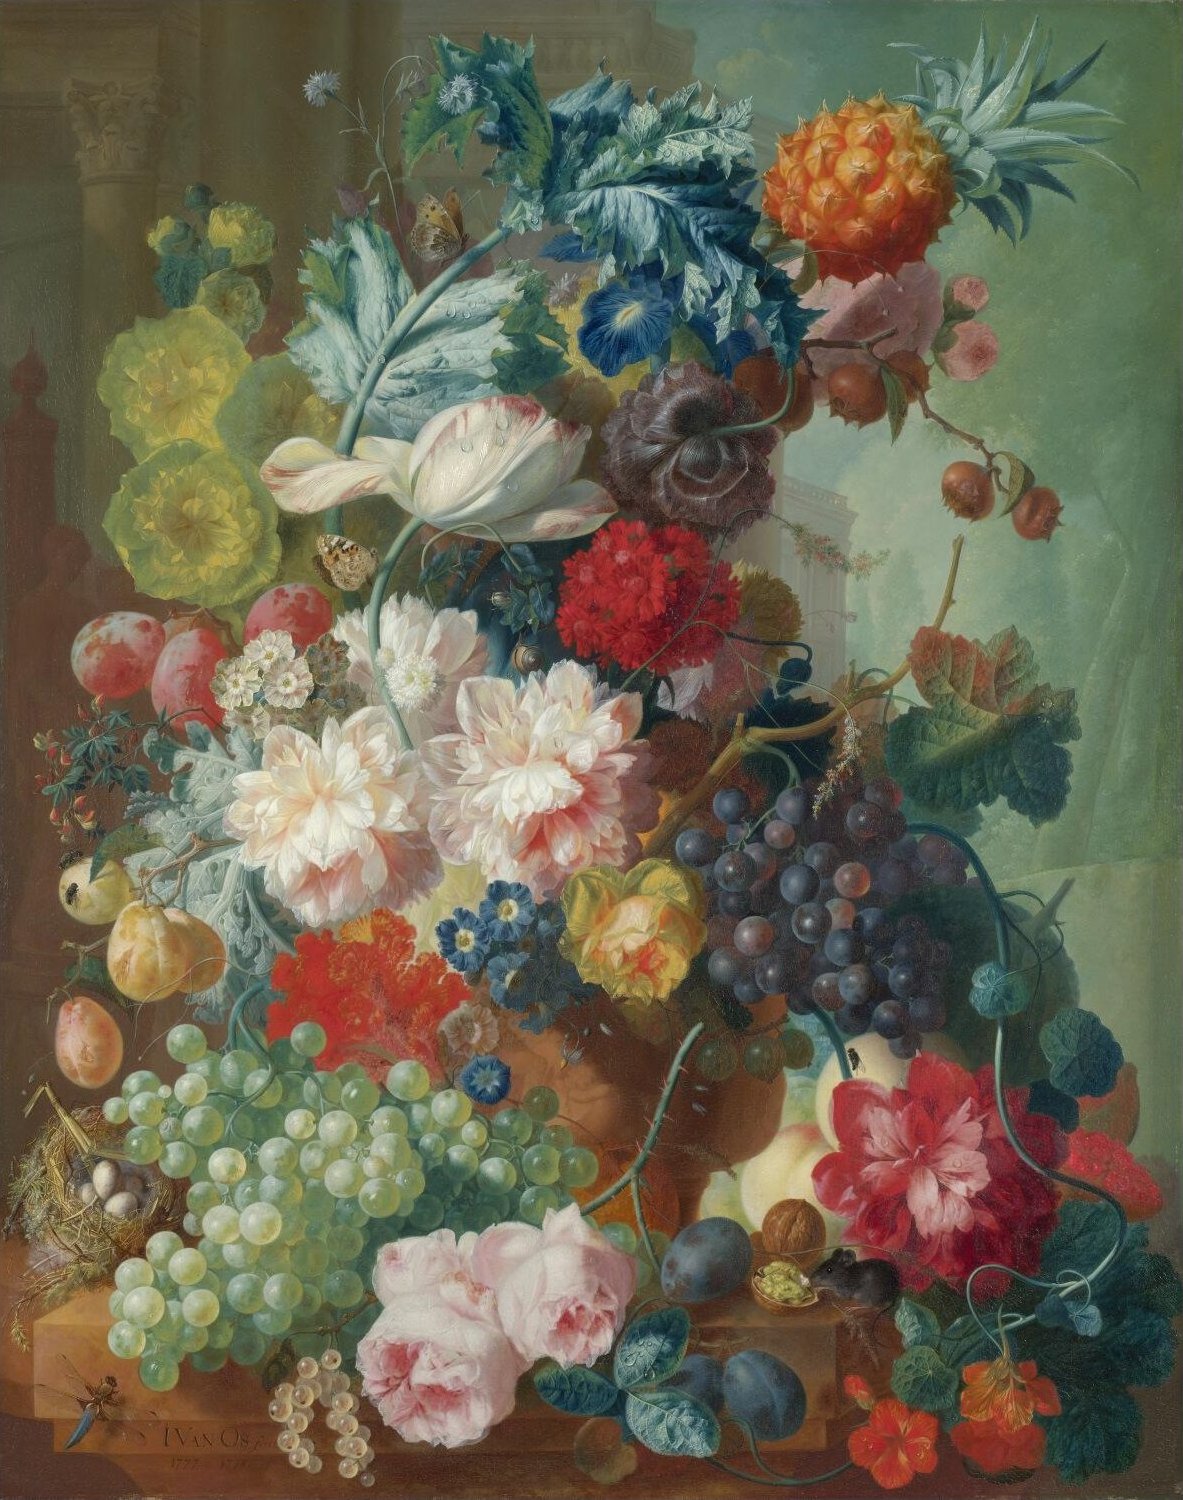 Blumen in einer Terrakotta-Vase by Jan Huysum - 1736-7 - 133.5 x 91.5 cm National Gallery